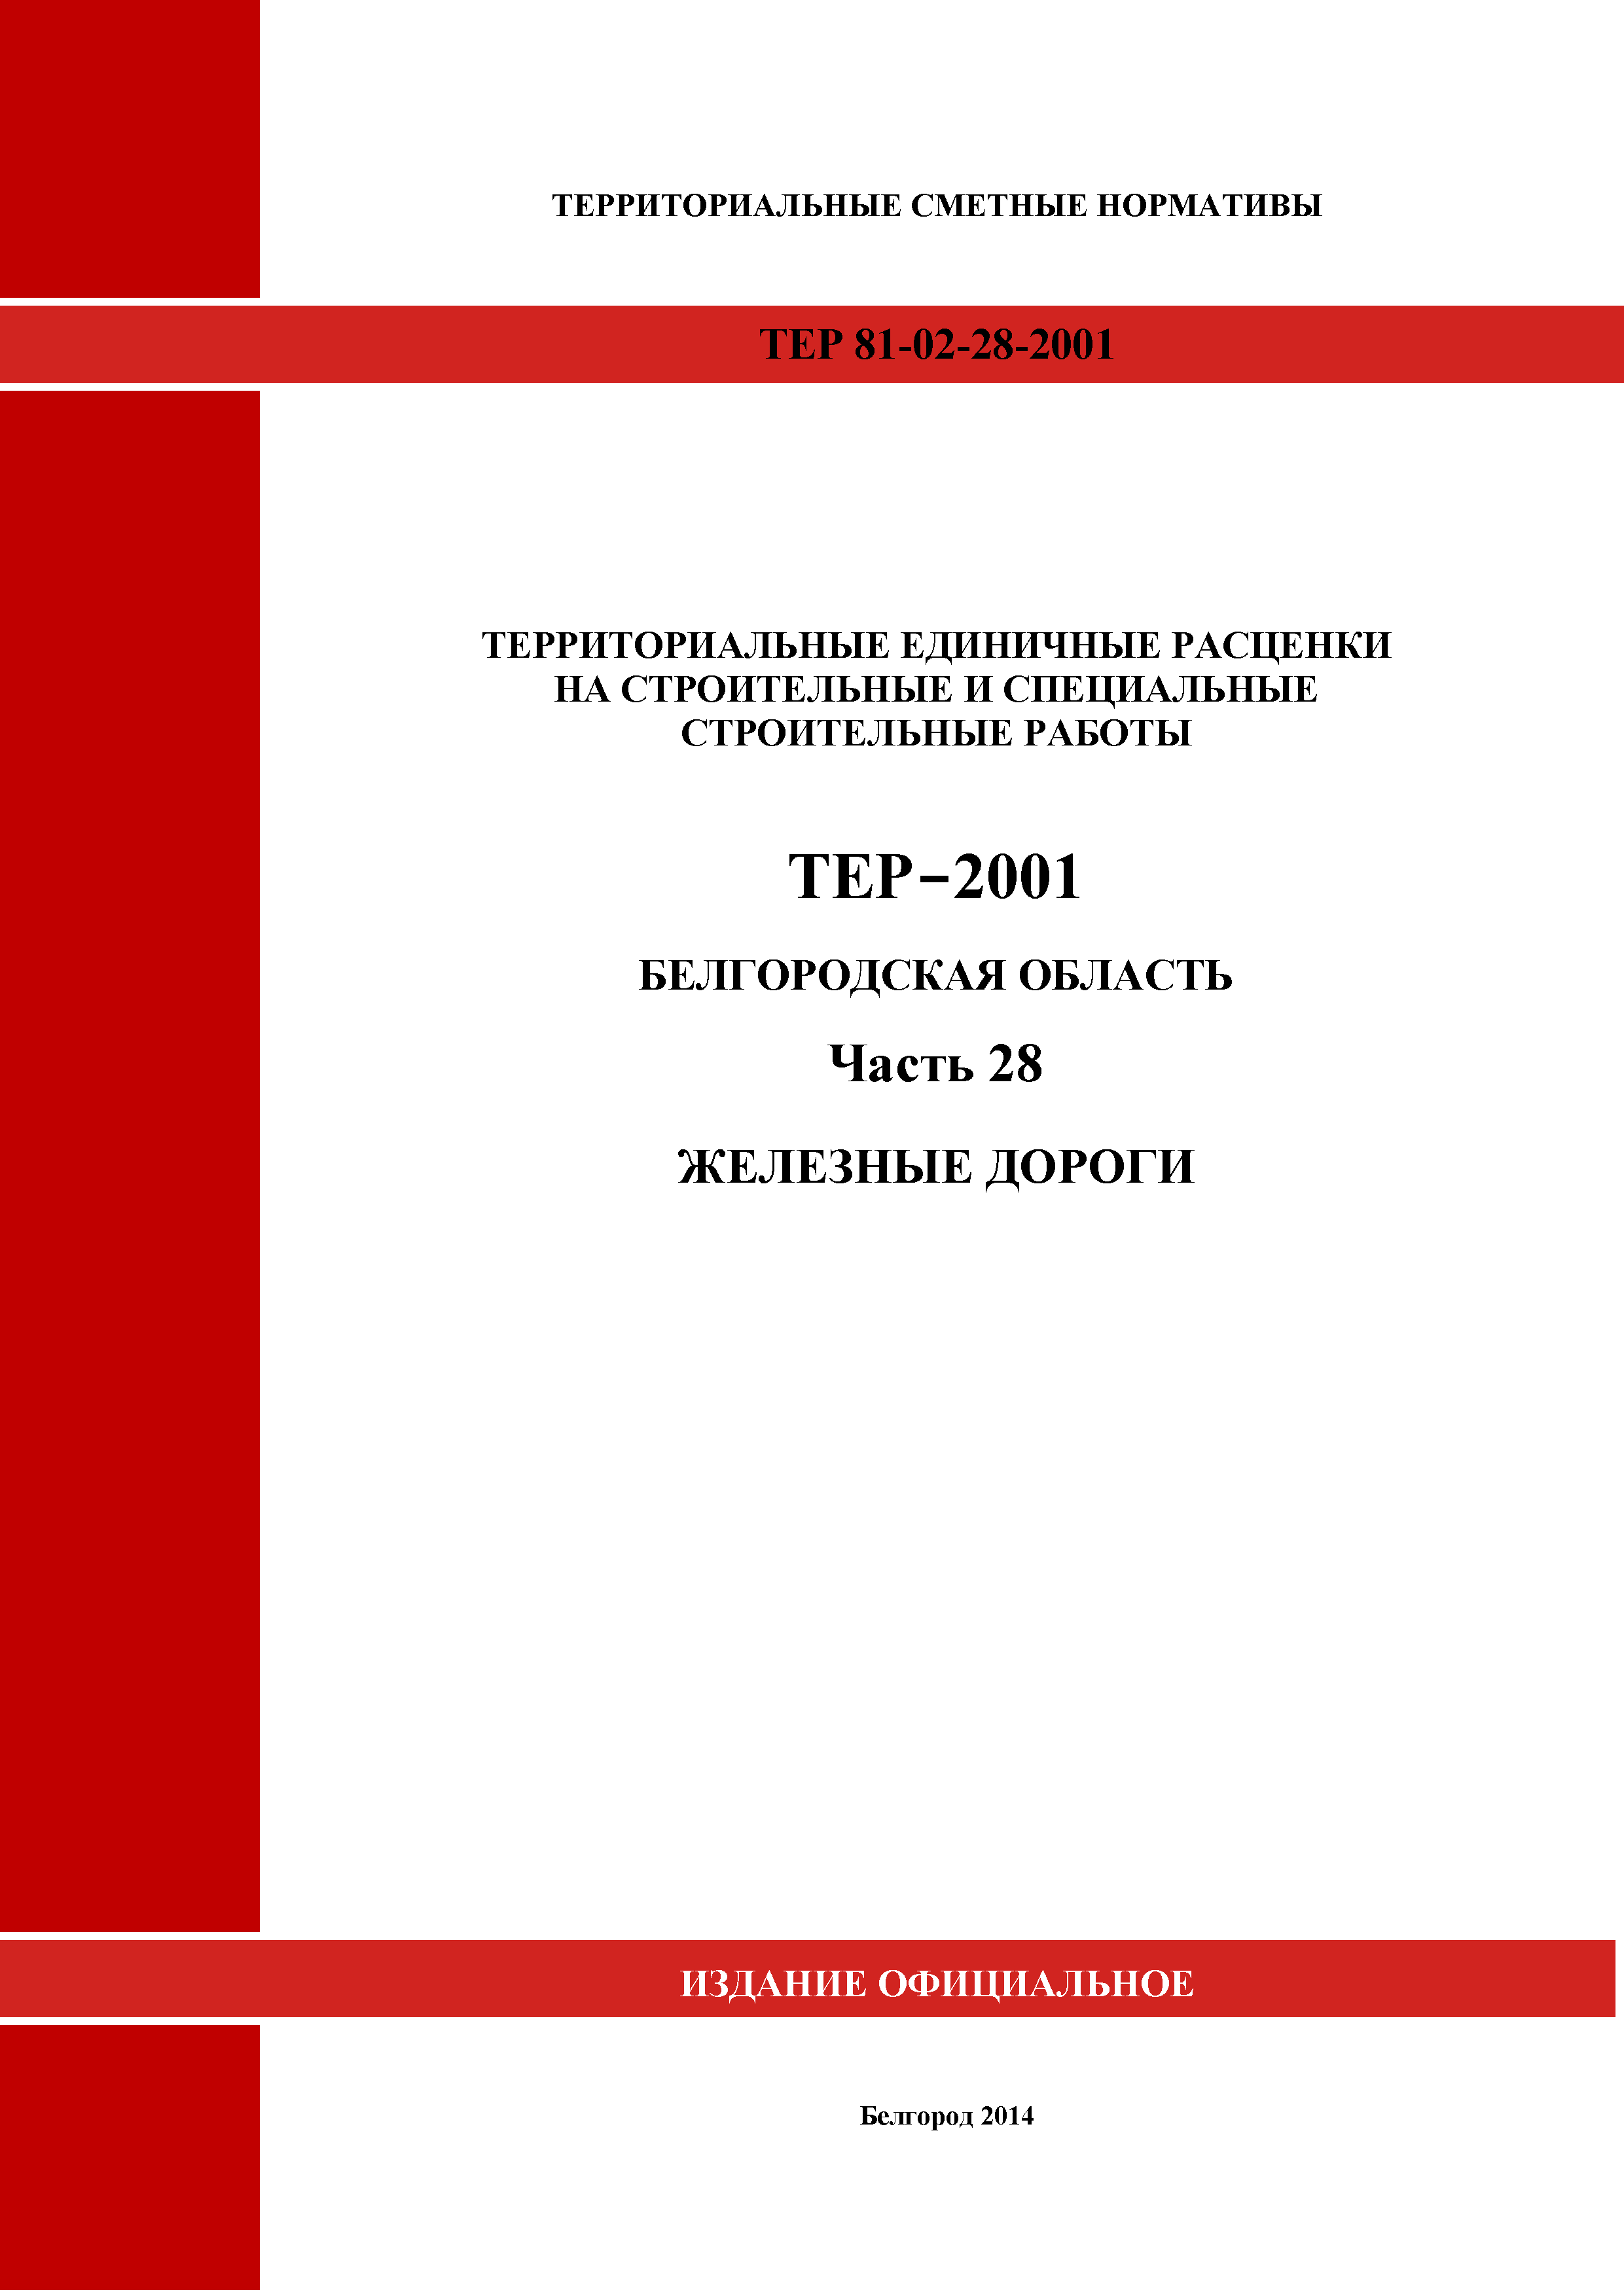 ТЕР Белгородская область 81-02-28-2001